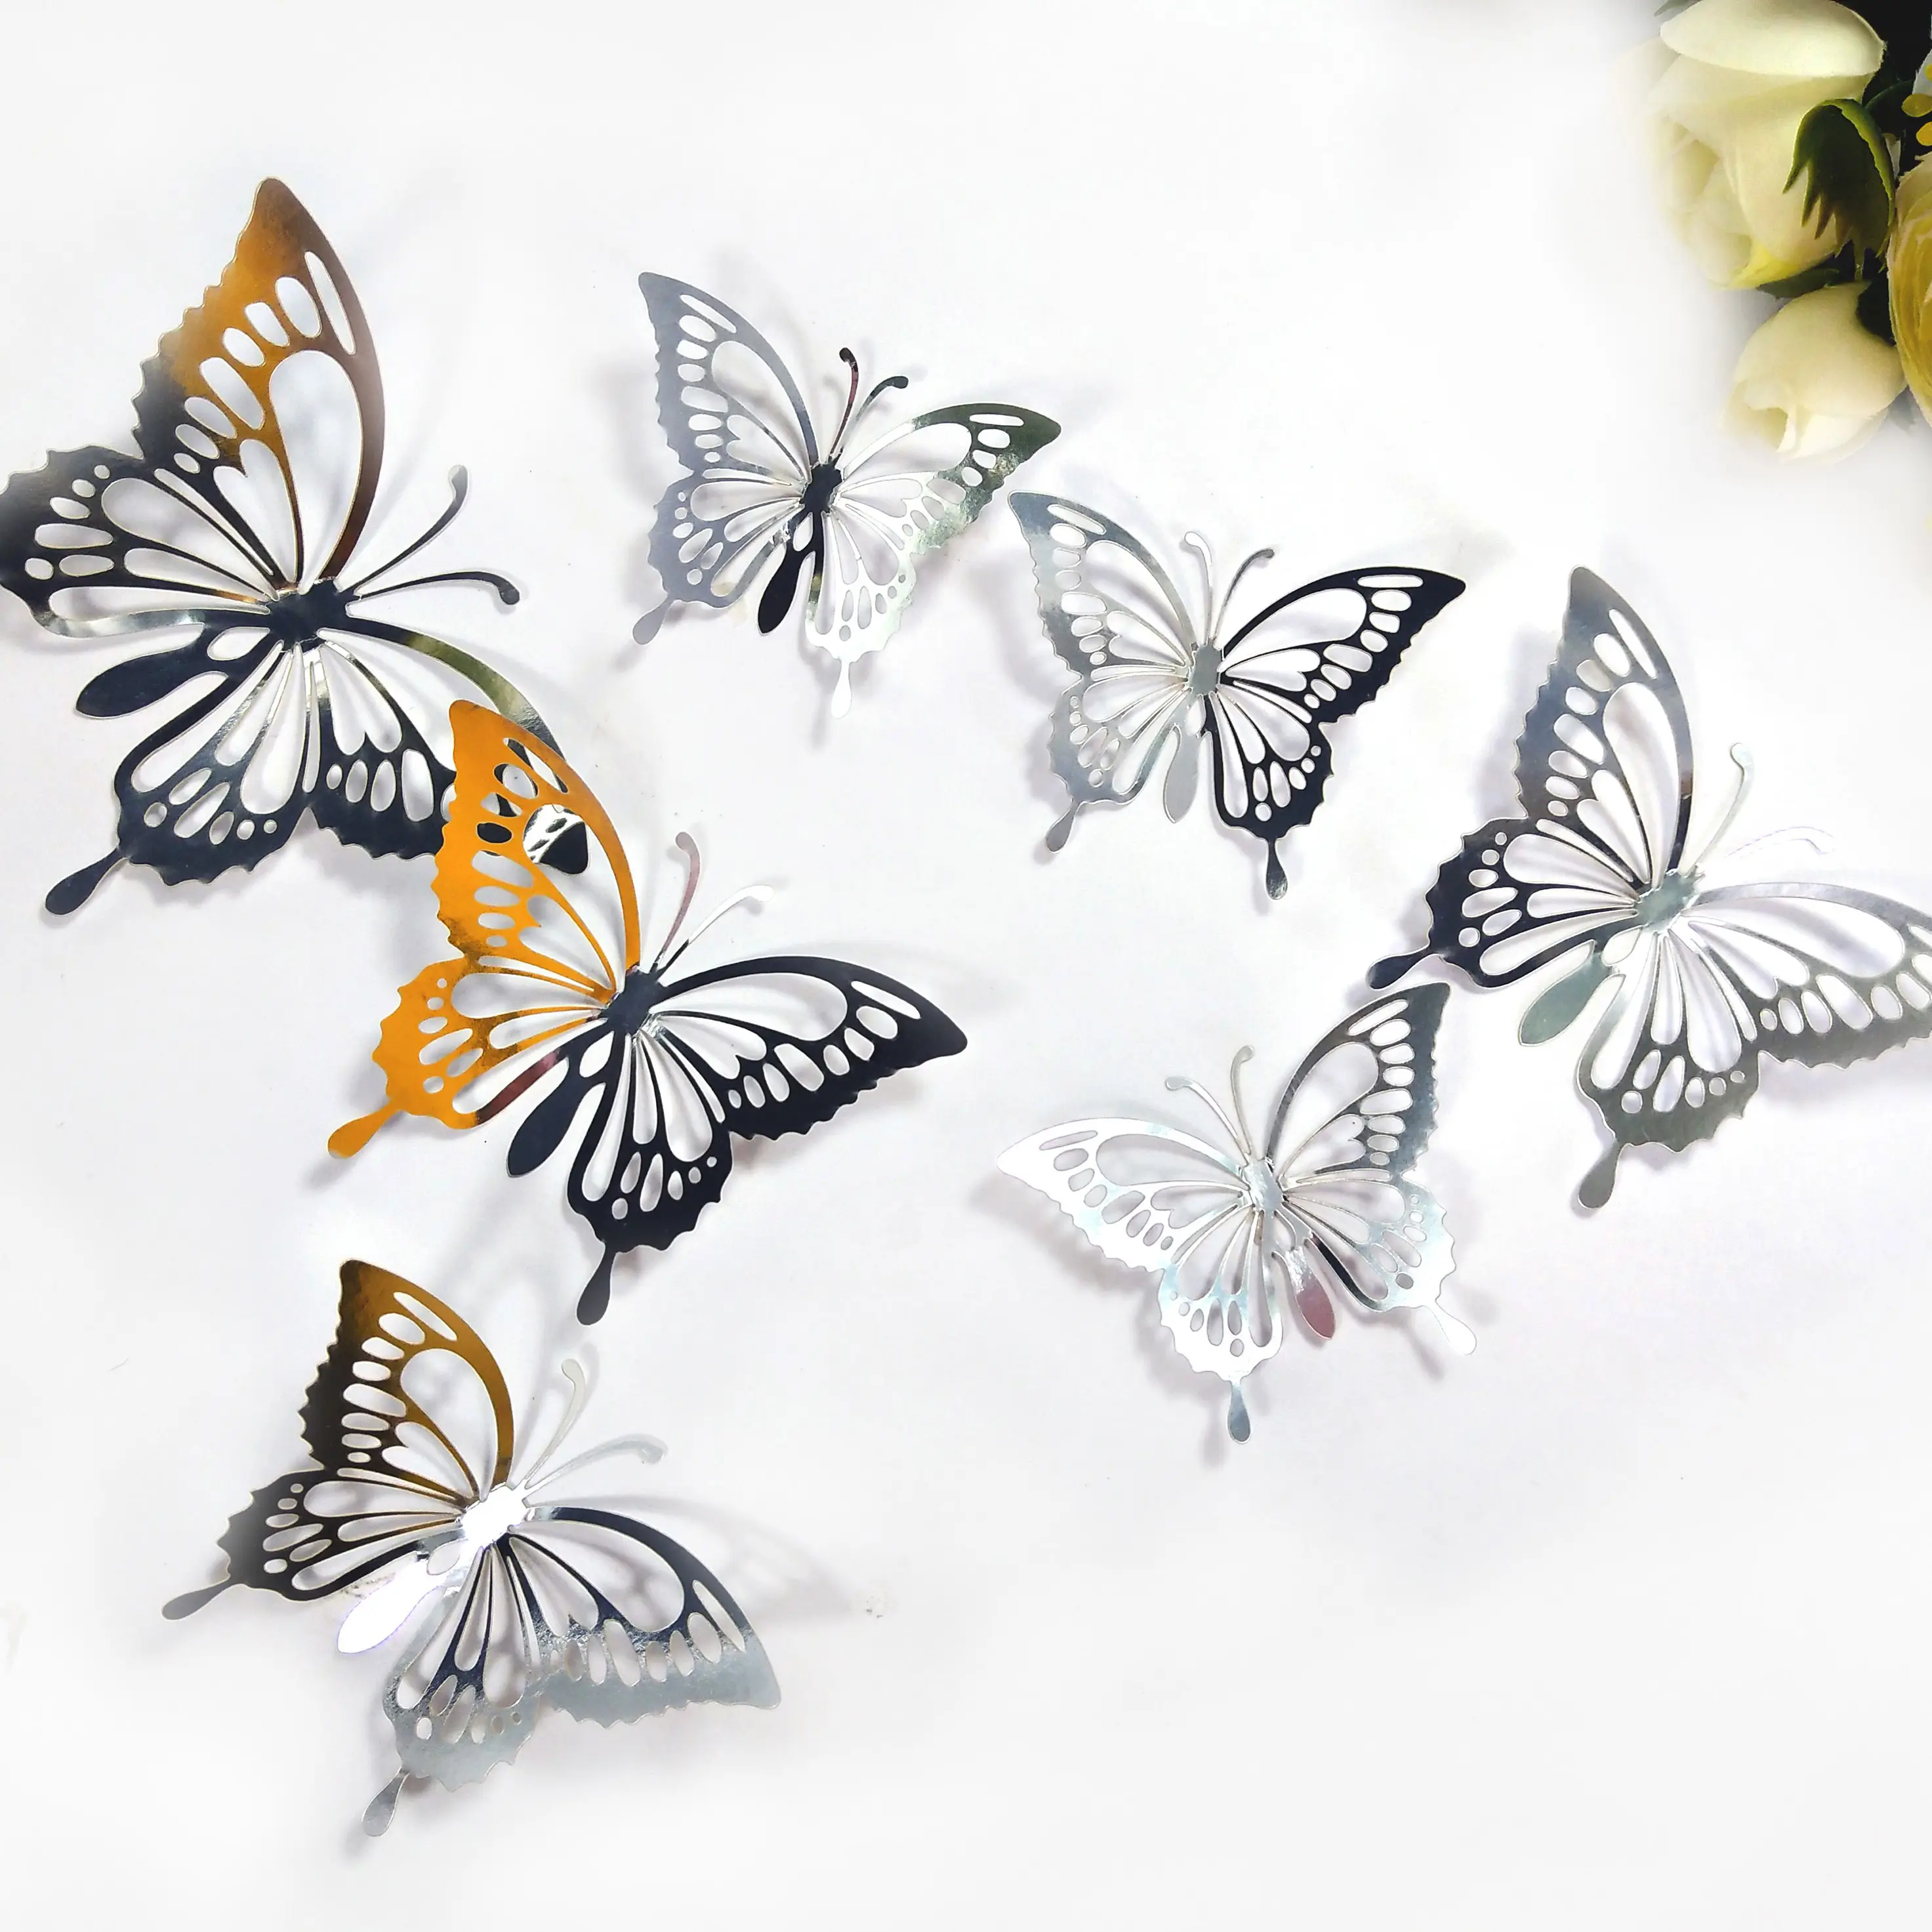 Metallic laser cut paper butterflies wall sticker 3d butterfly wall decal wedding party decorations